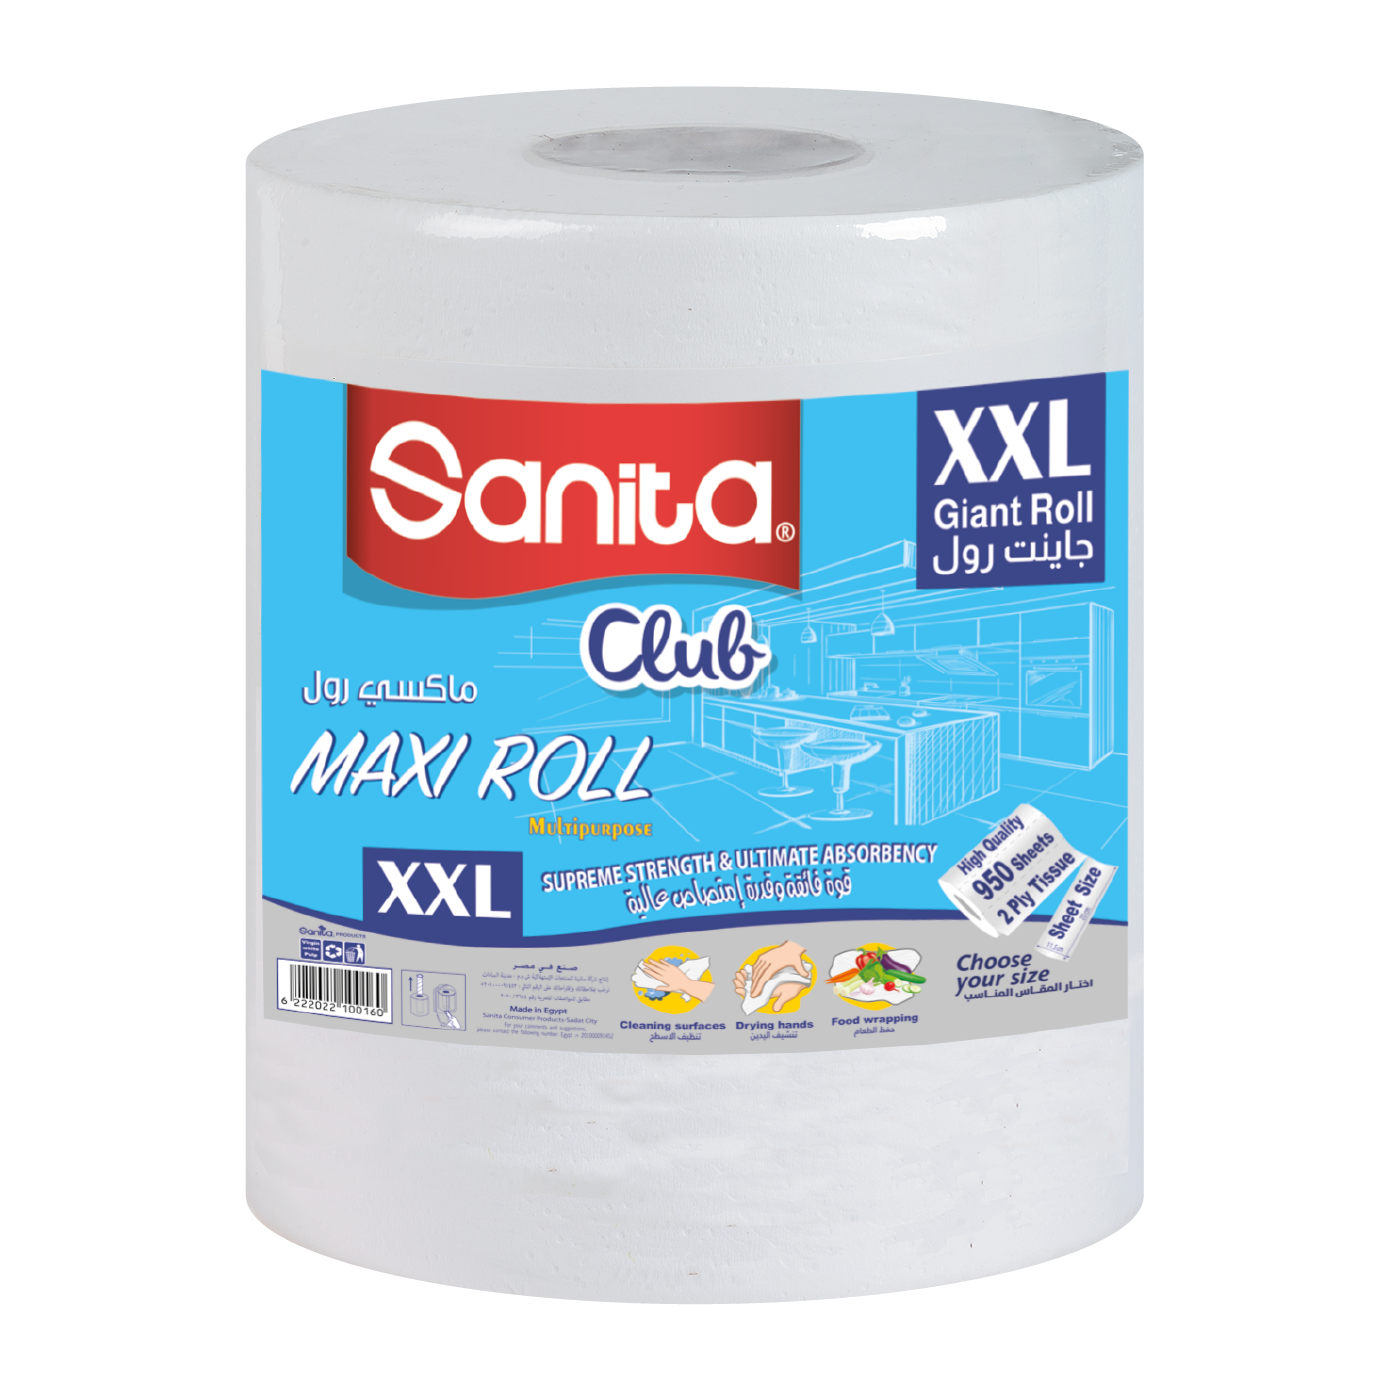 Sanita Club Maxi Roll XXL 1 Roll